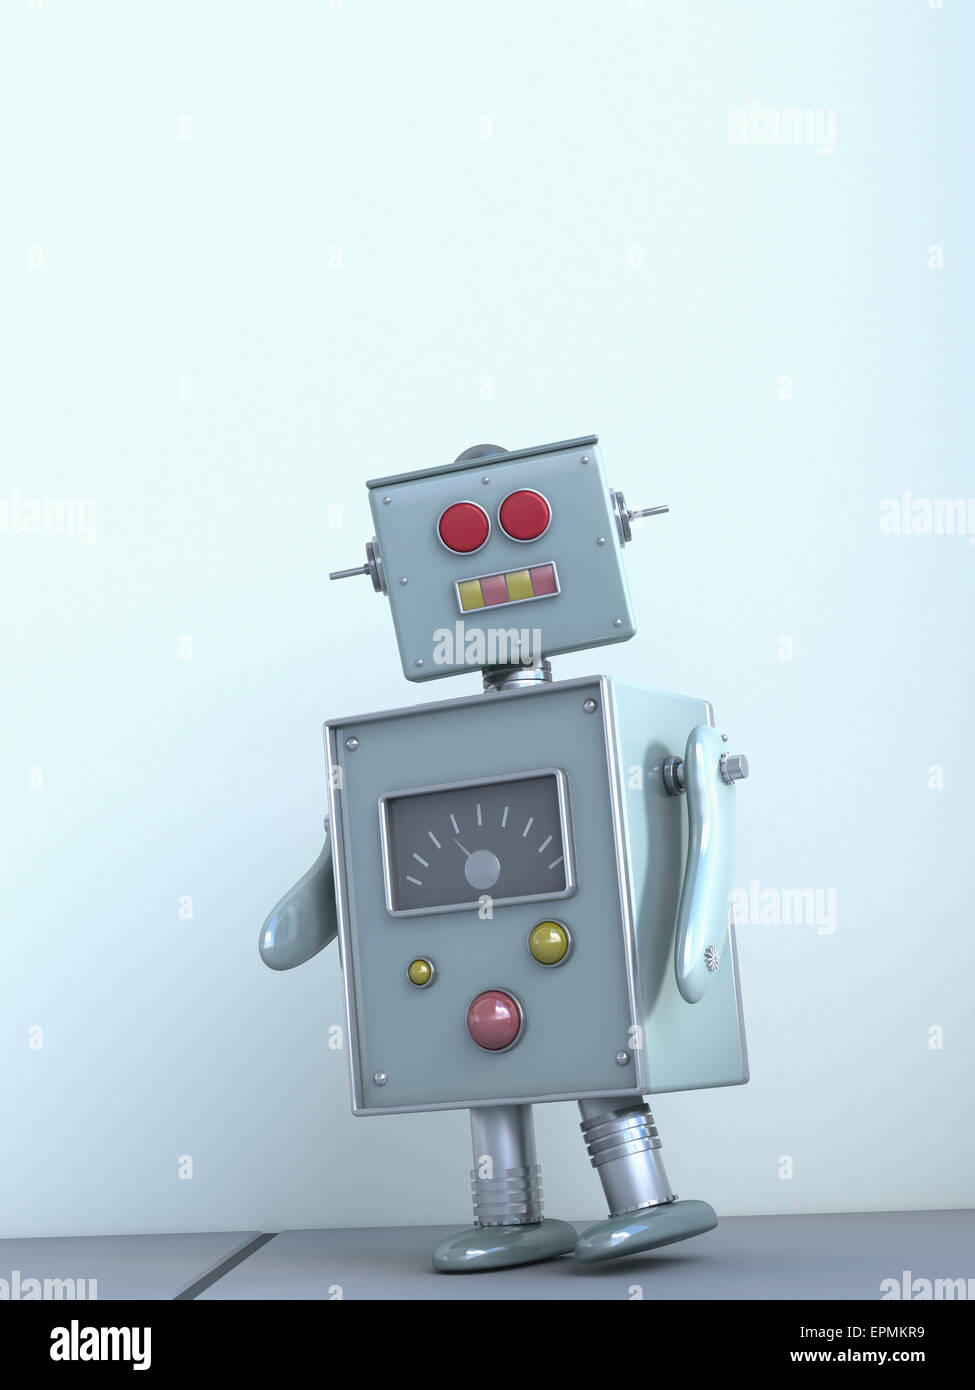 Robot, 3D rendering Stock Photo